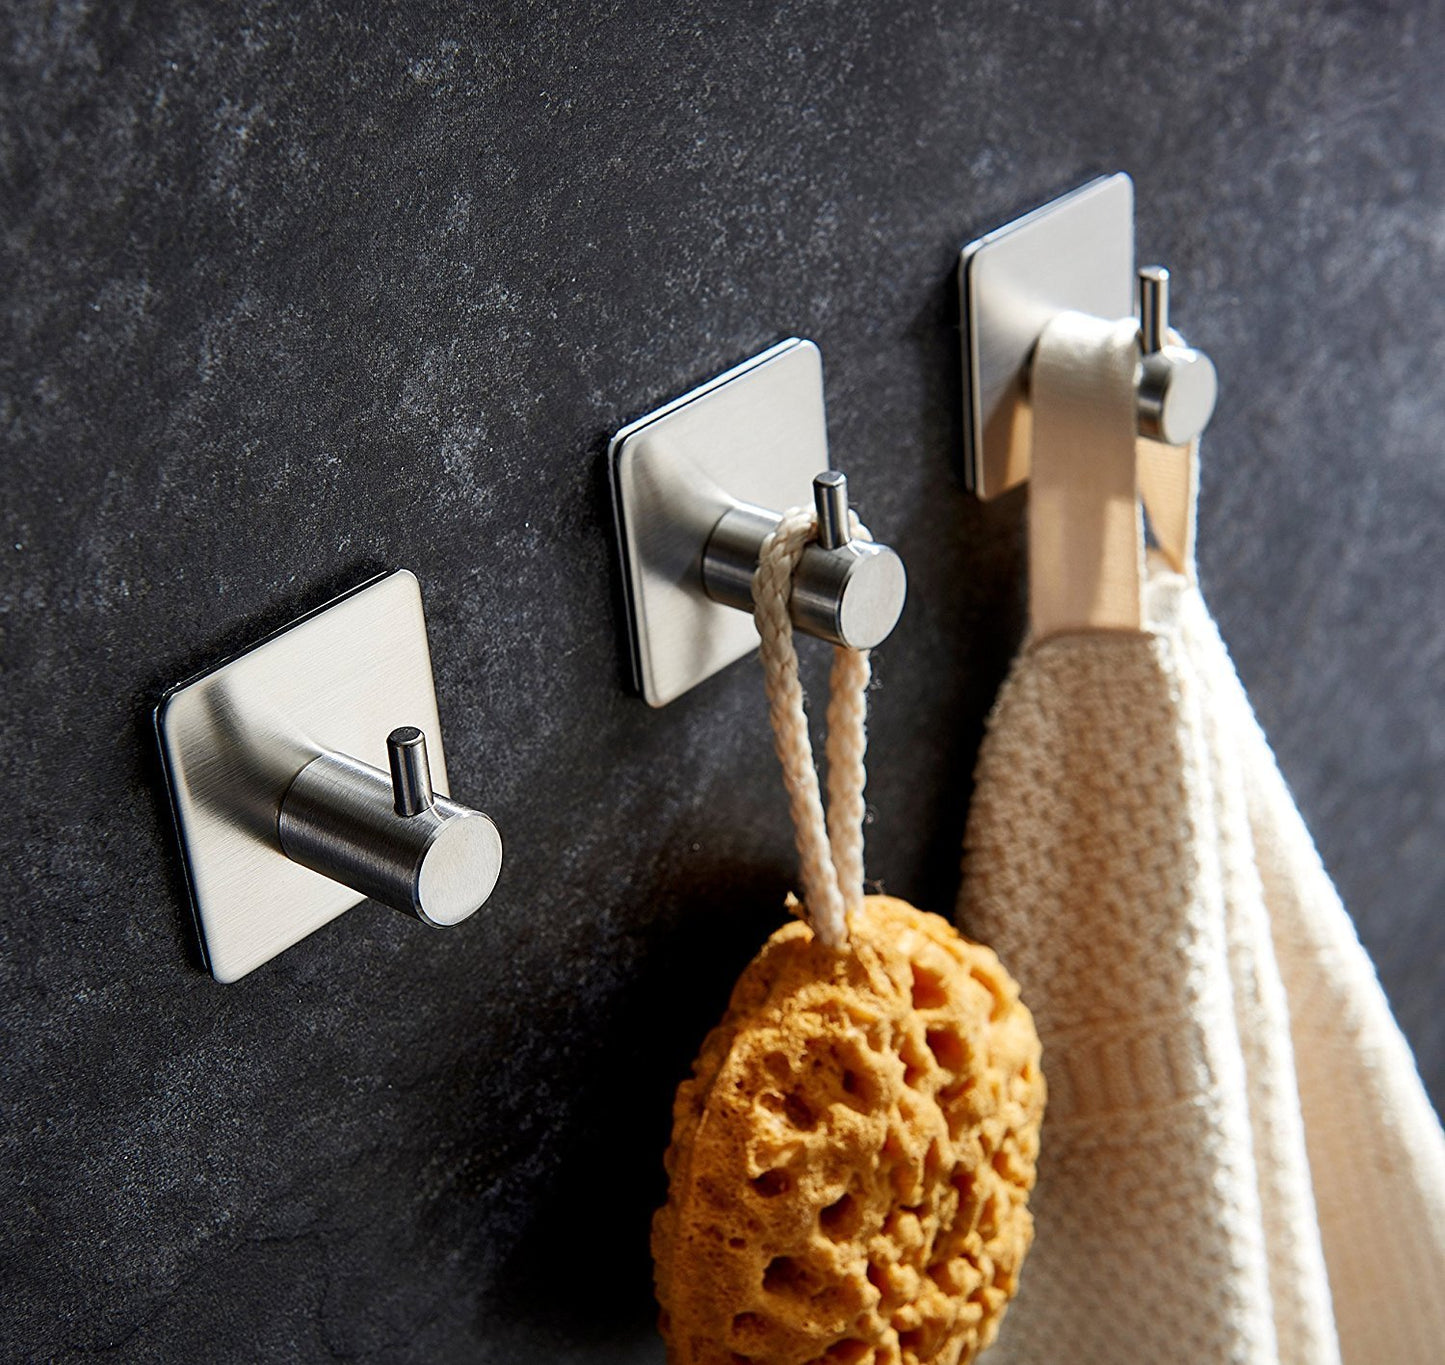 Innoam Robe Towel Coat Hook 3M Self Adhesive Bathroom Kitchen Wall Hooks Brushed Stainless Steel (4 Pack)